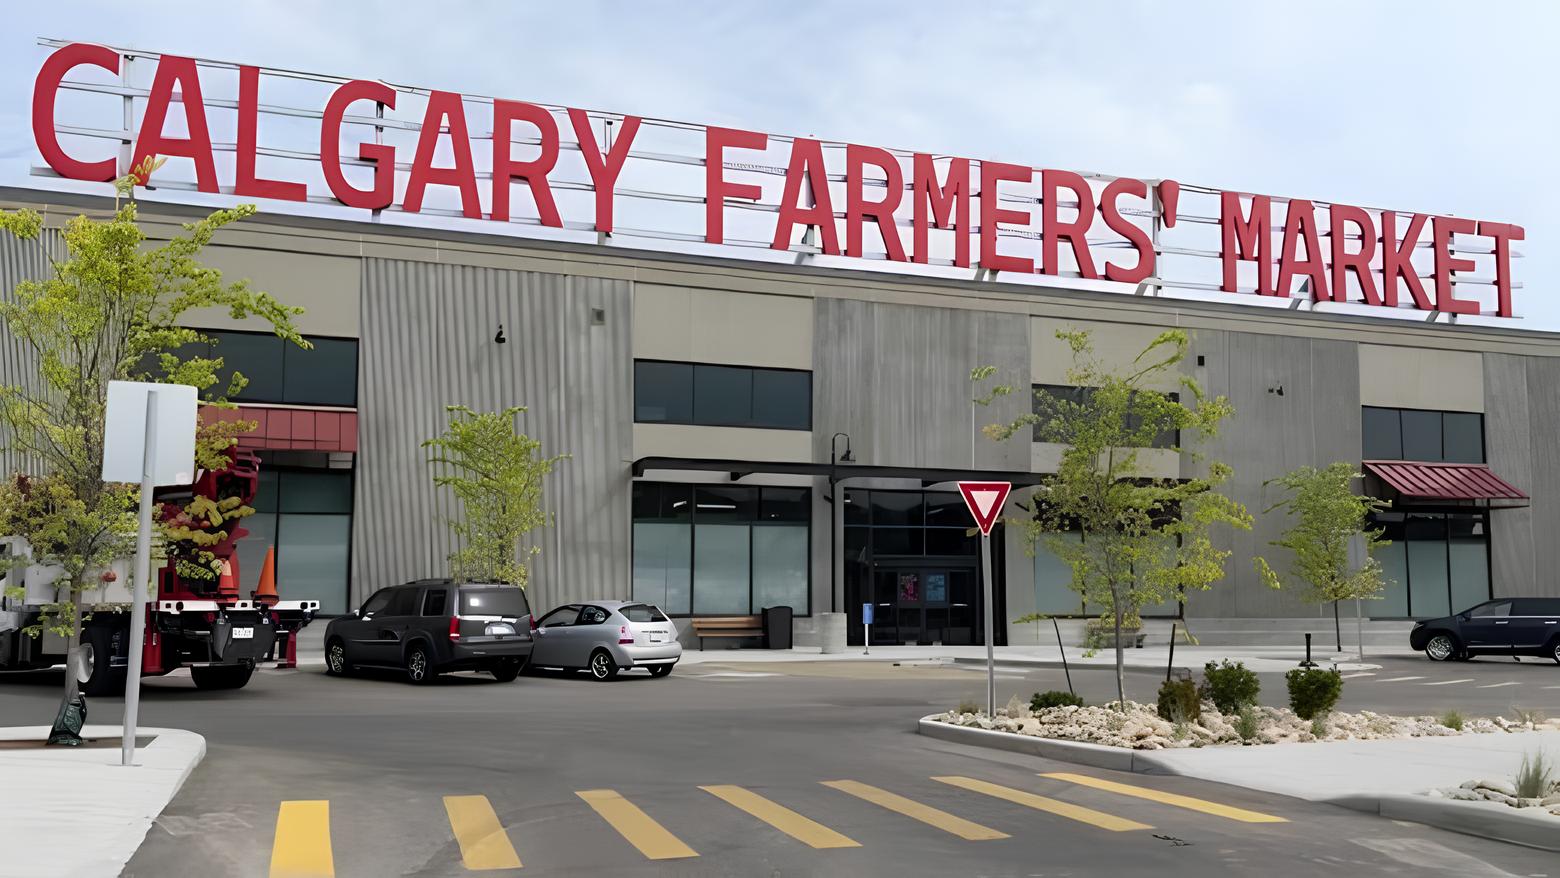 The Calgary Farmer’s Market